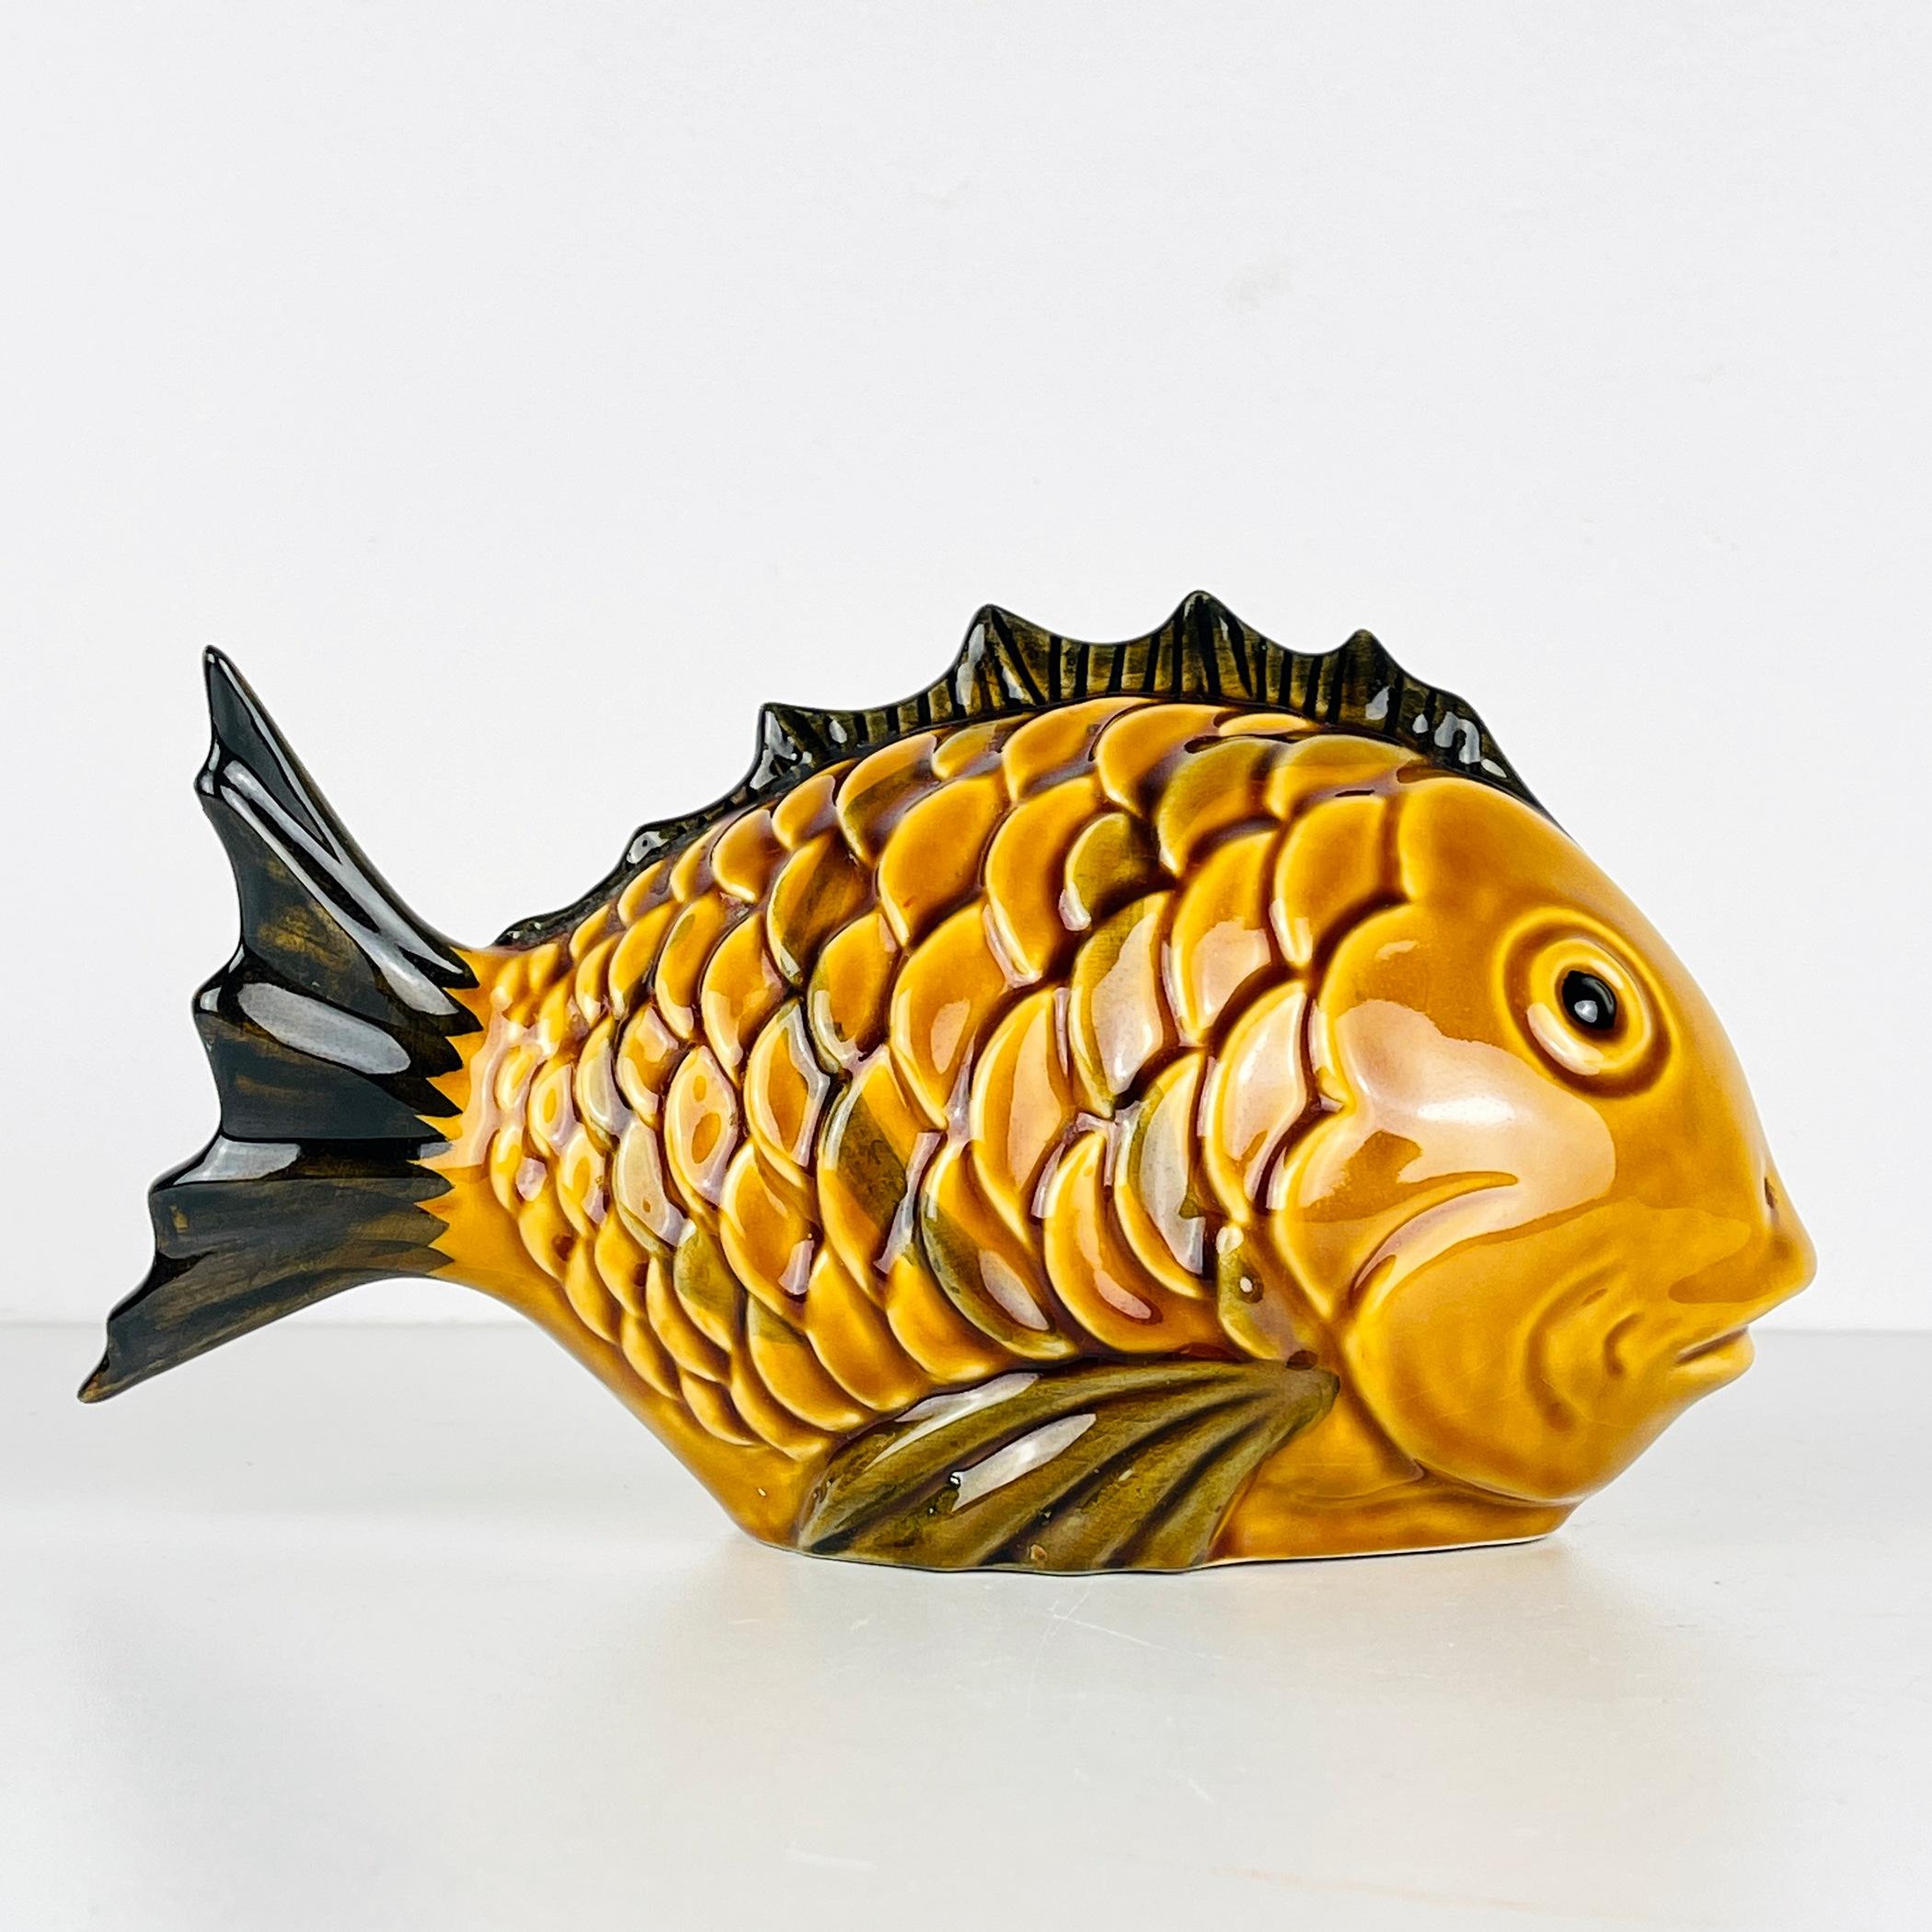 Découvrez cette charmante figurine vintage en céramique, un ravissant poisson, issu des ateliers artisanaux du Portugal des années 1970. Malgré le passage du temps, il a conservé son allure et reste en très bon état. Cette pièce exquise témoigne du